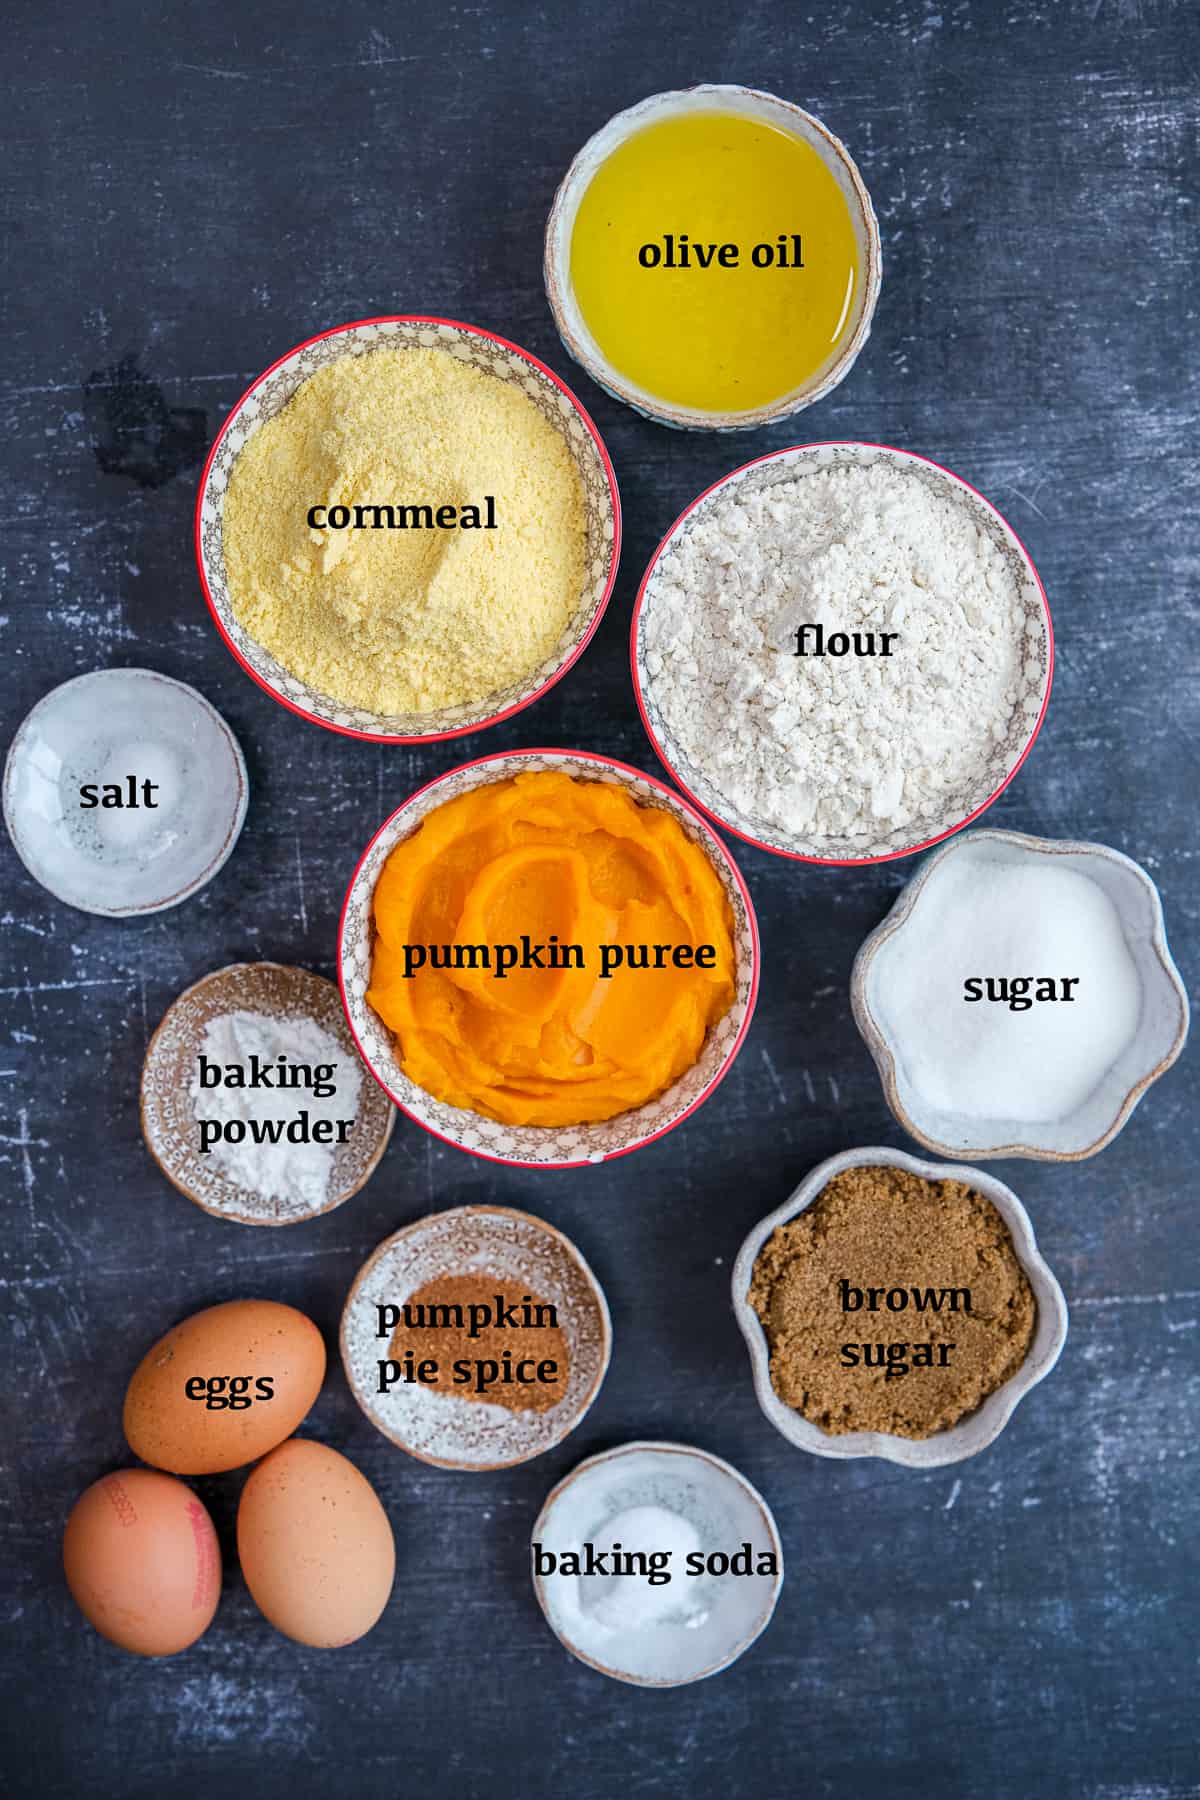 南瓜泥、玉米粉、面粉、橄榄油、红糖、砂糖、鸡蛋、南瓜香料、盐、小苏打和泡打粉都放在不同的碗里，背景是深色的。